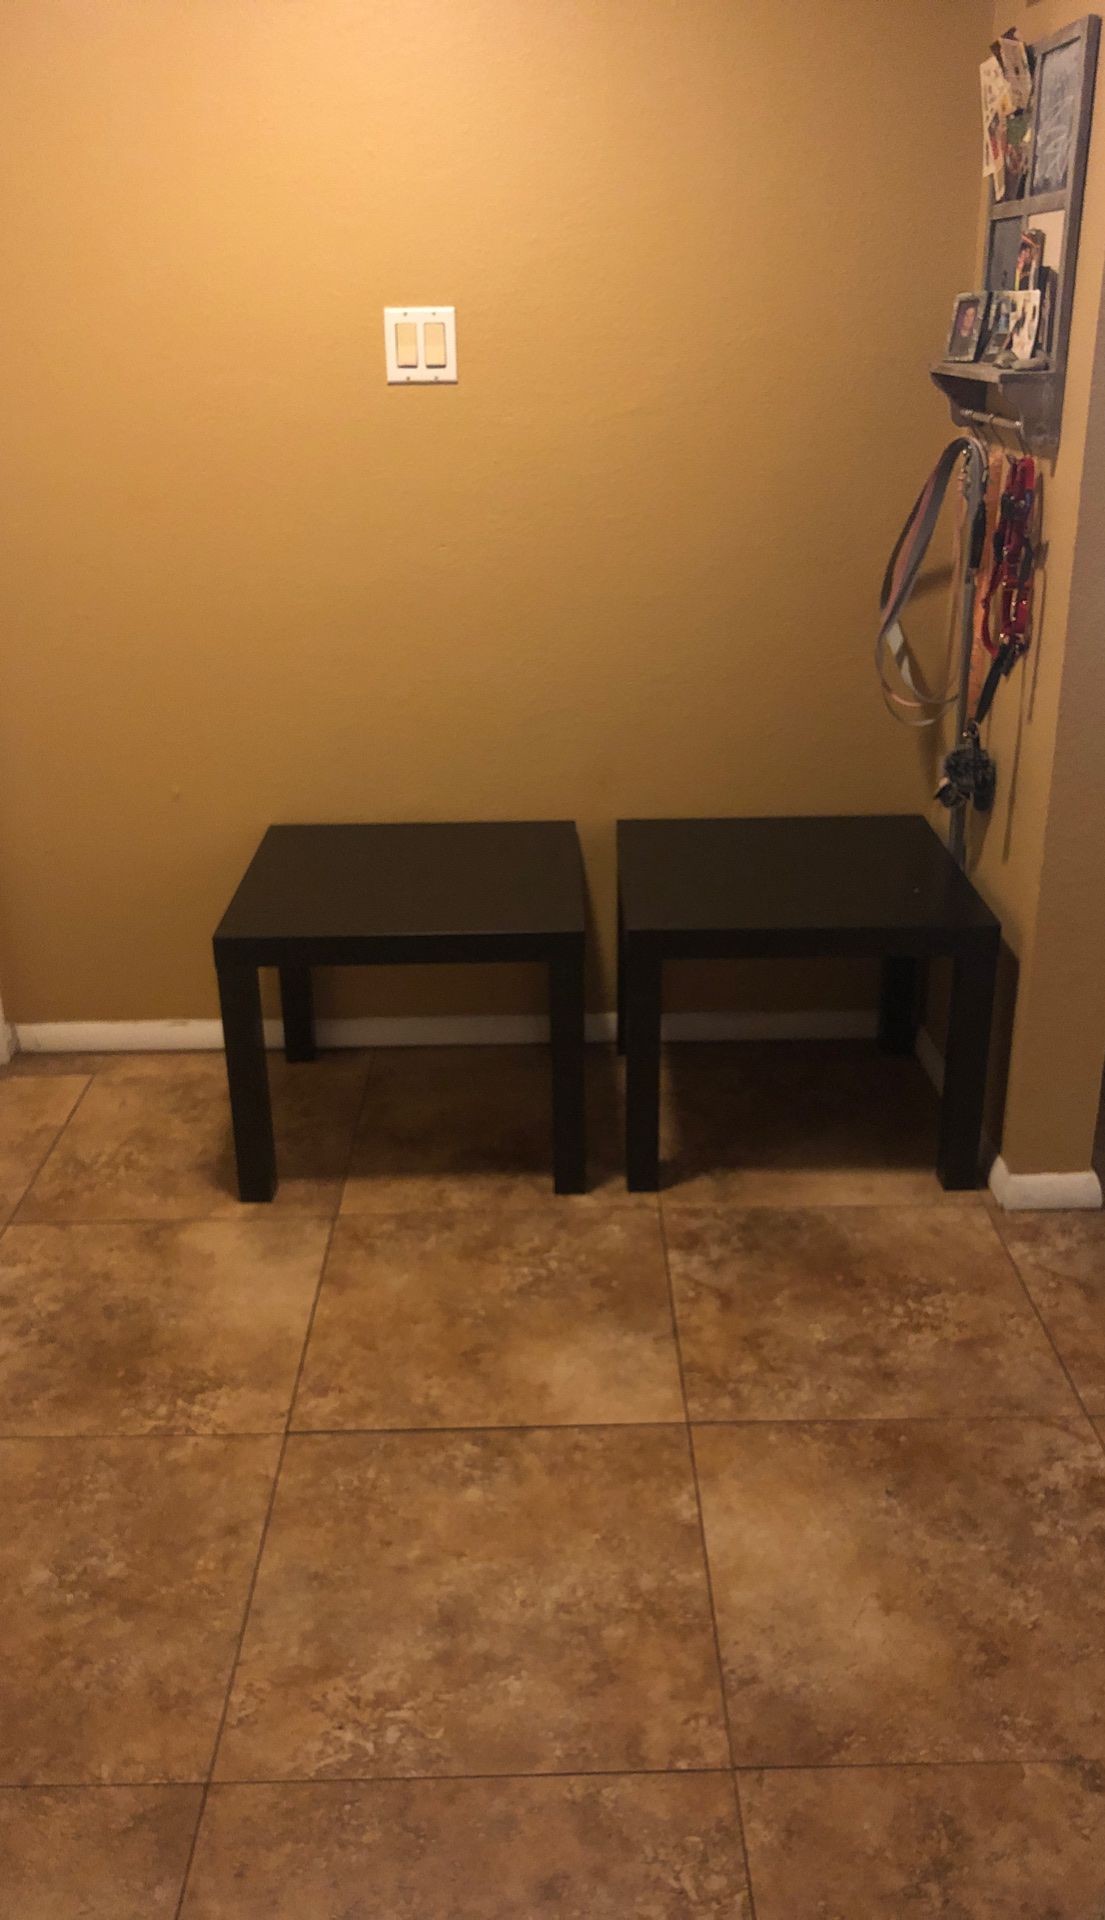 IKEA side tables